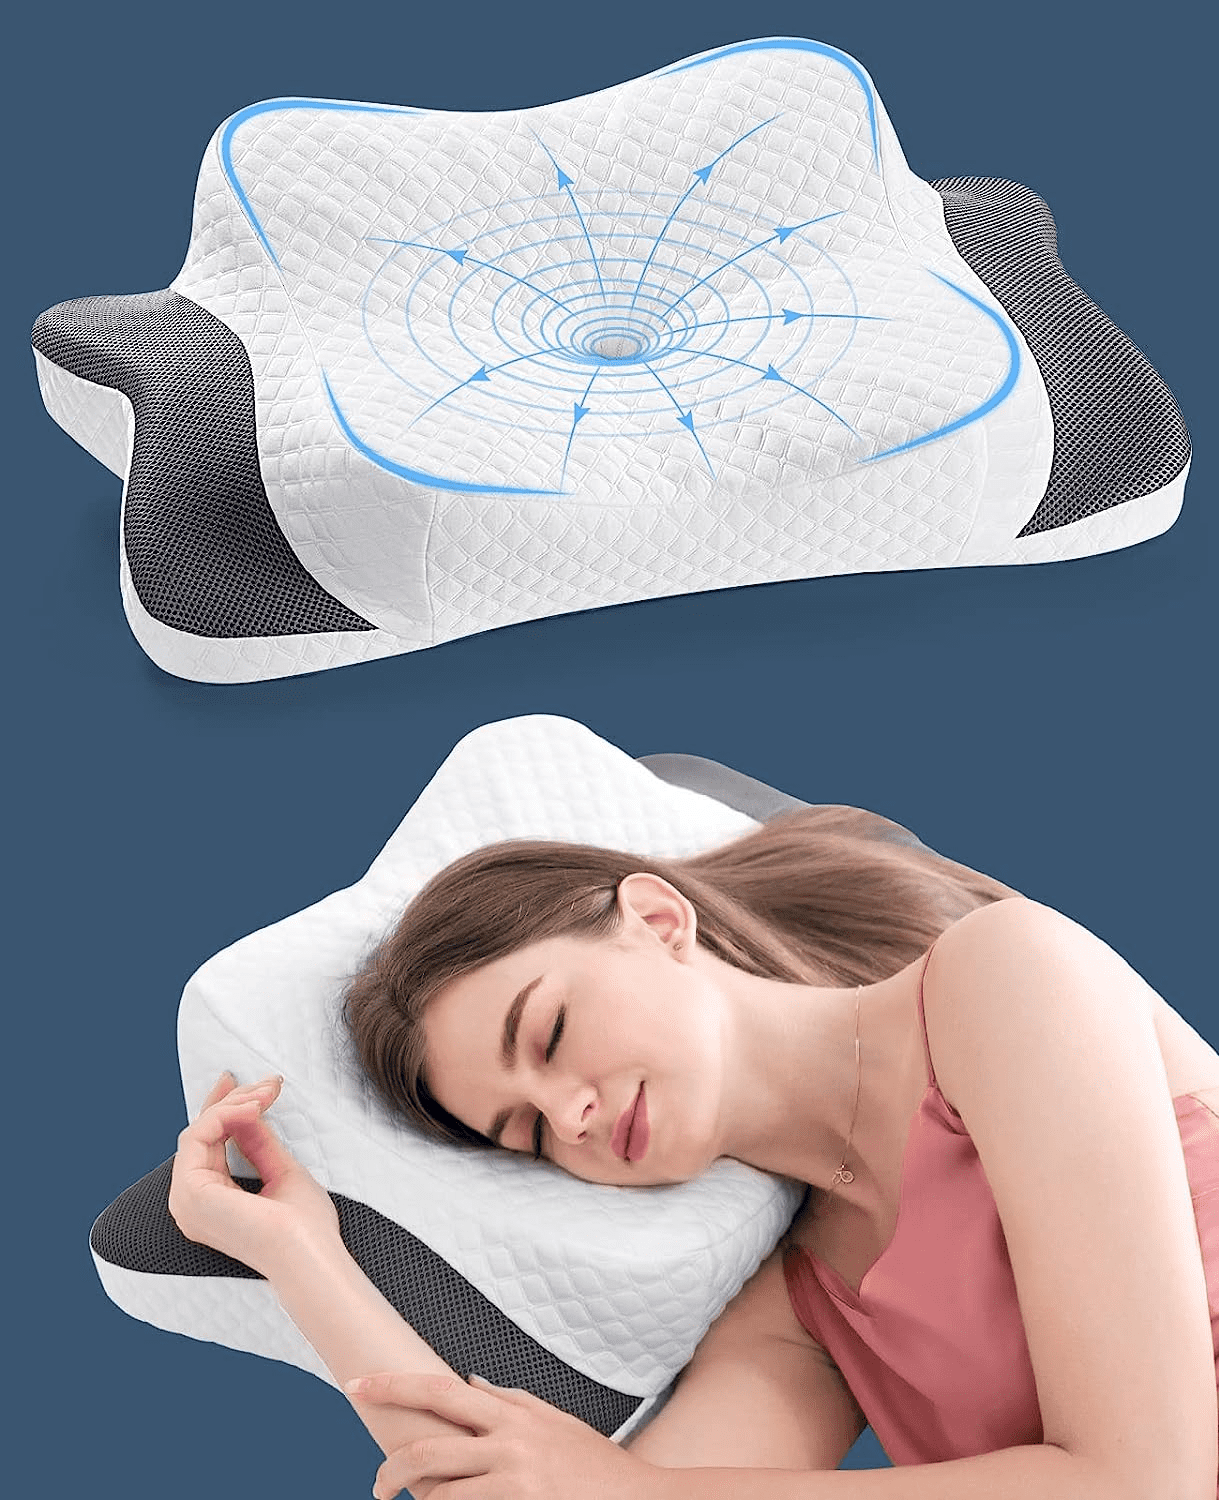 Pillows for Sleeping - XTX Memory Foam Pillow, Cervical Pillow for